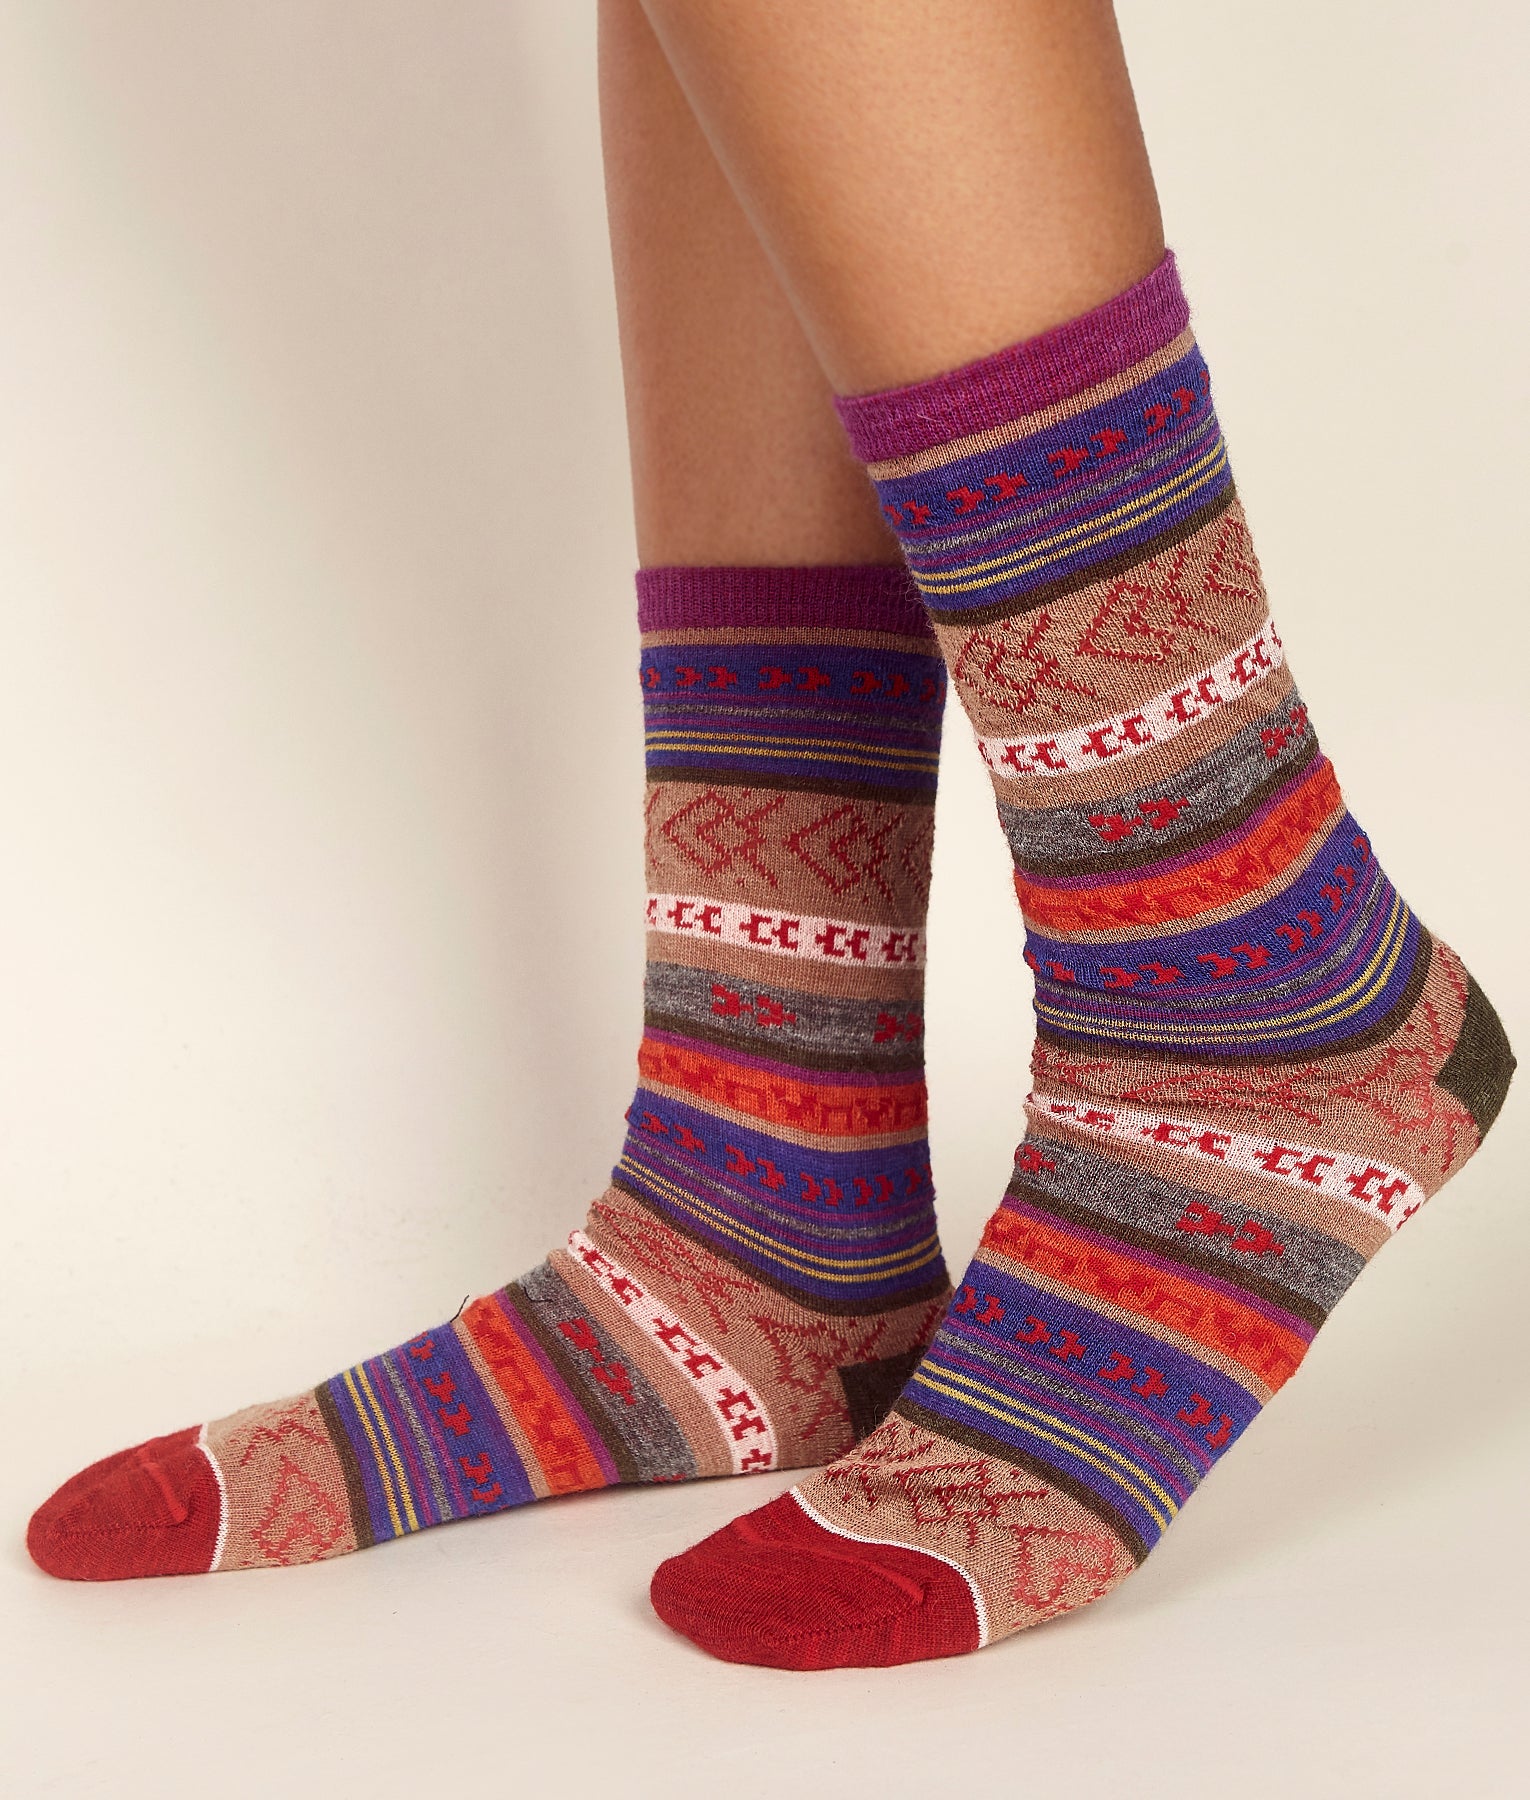 Wholesale Socks: Premium Alpaca Unisex American Socks